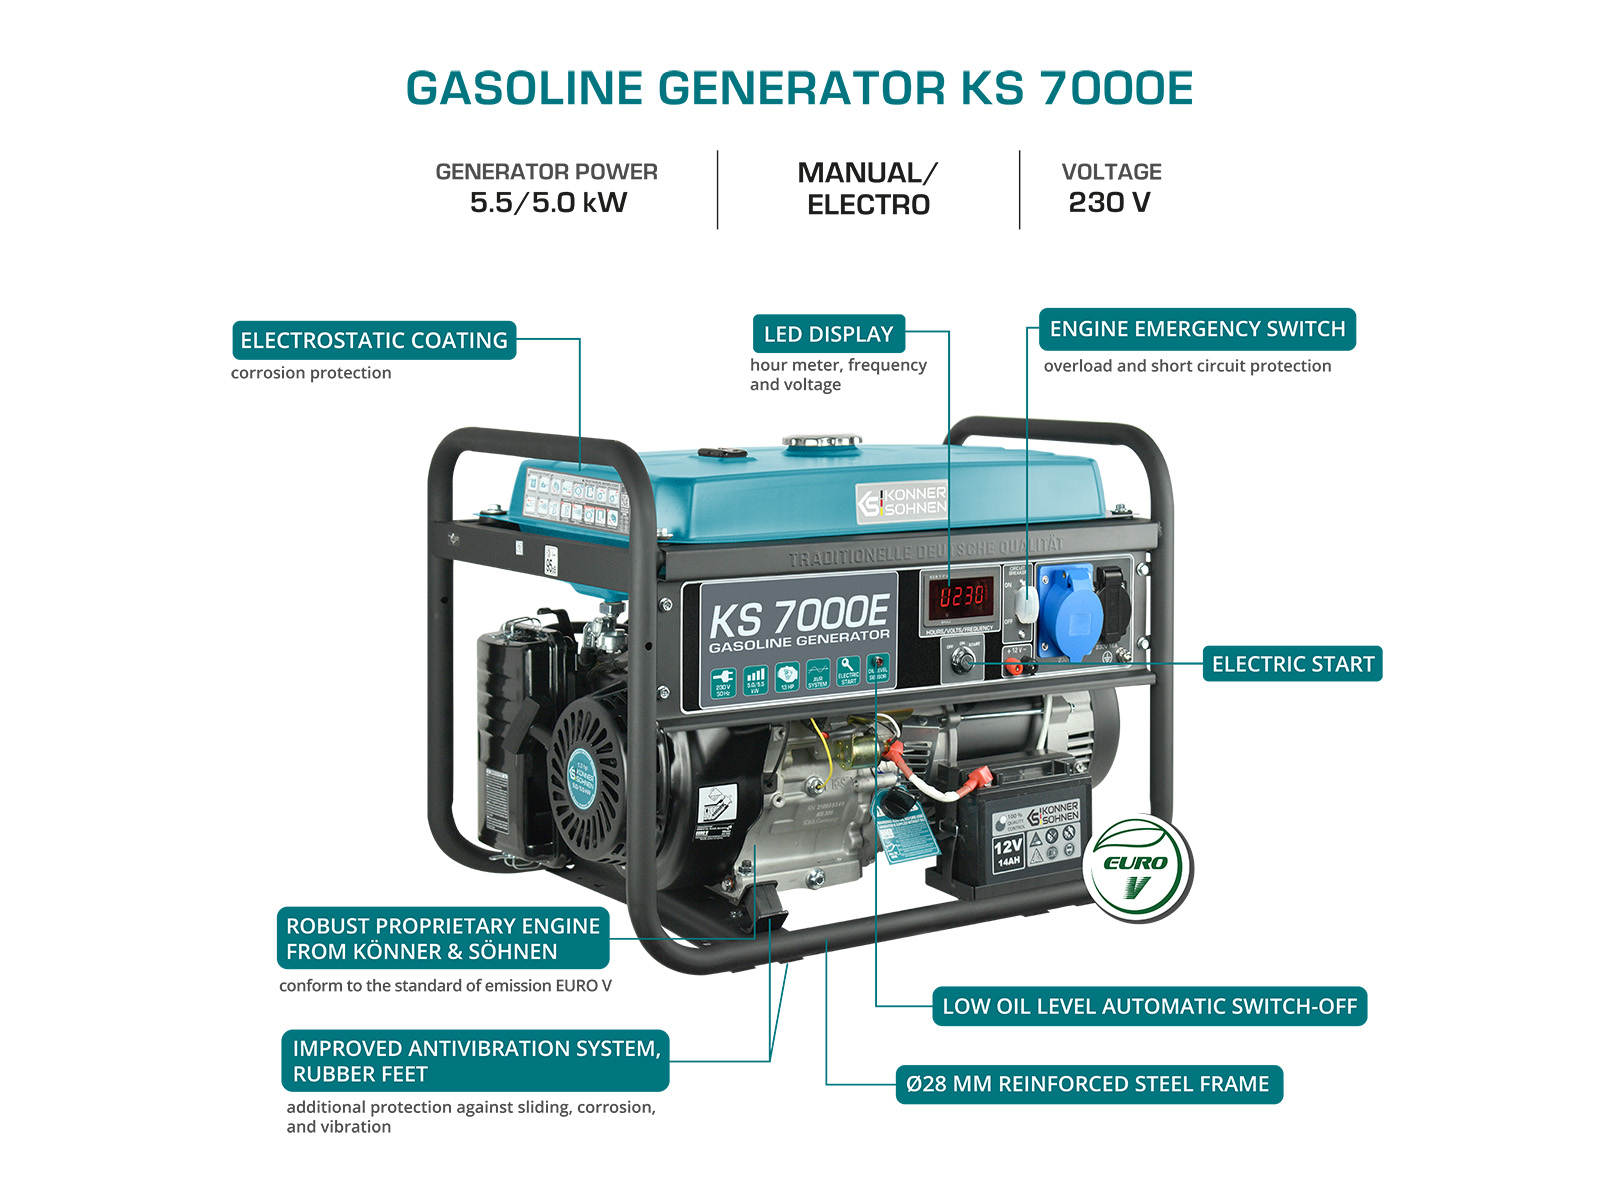 Gasoline generator "Könner & Söhnen" KS 7000E